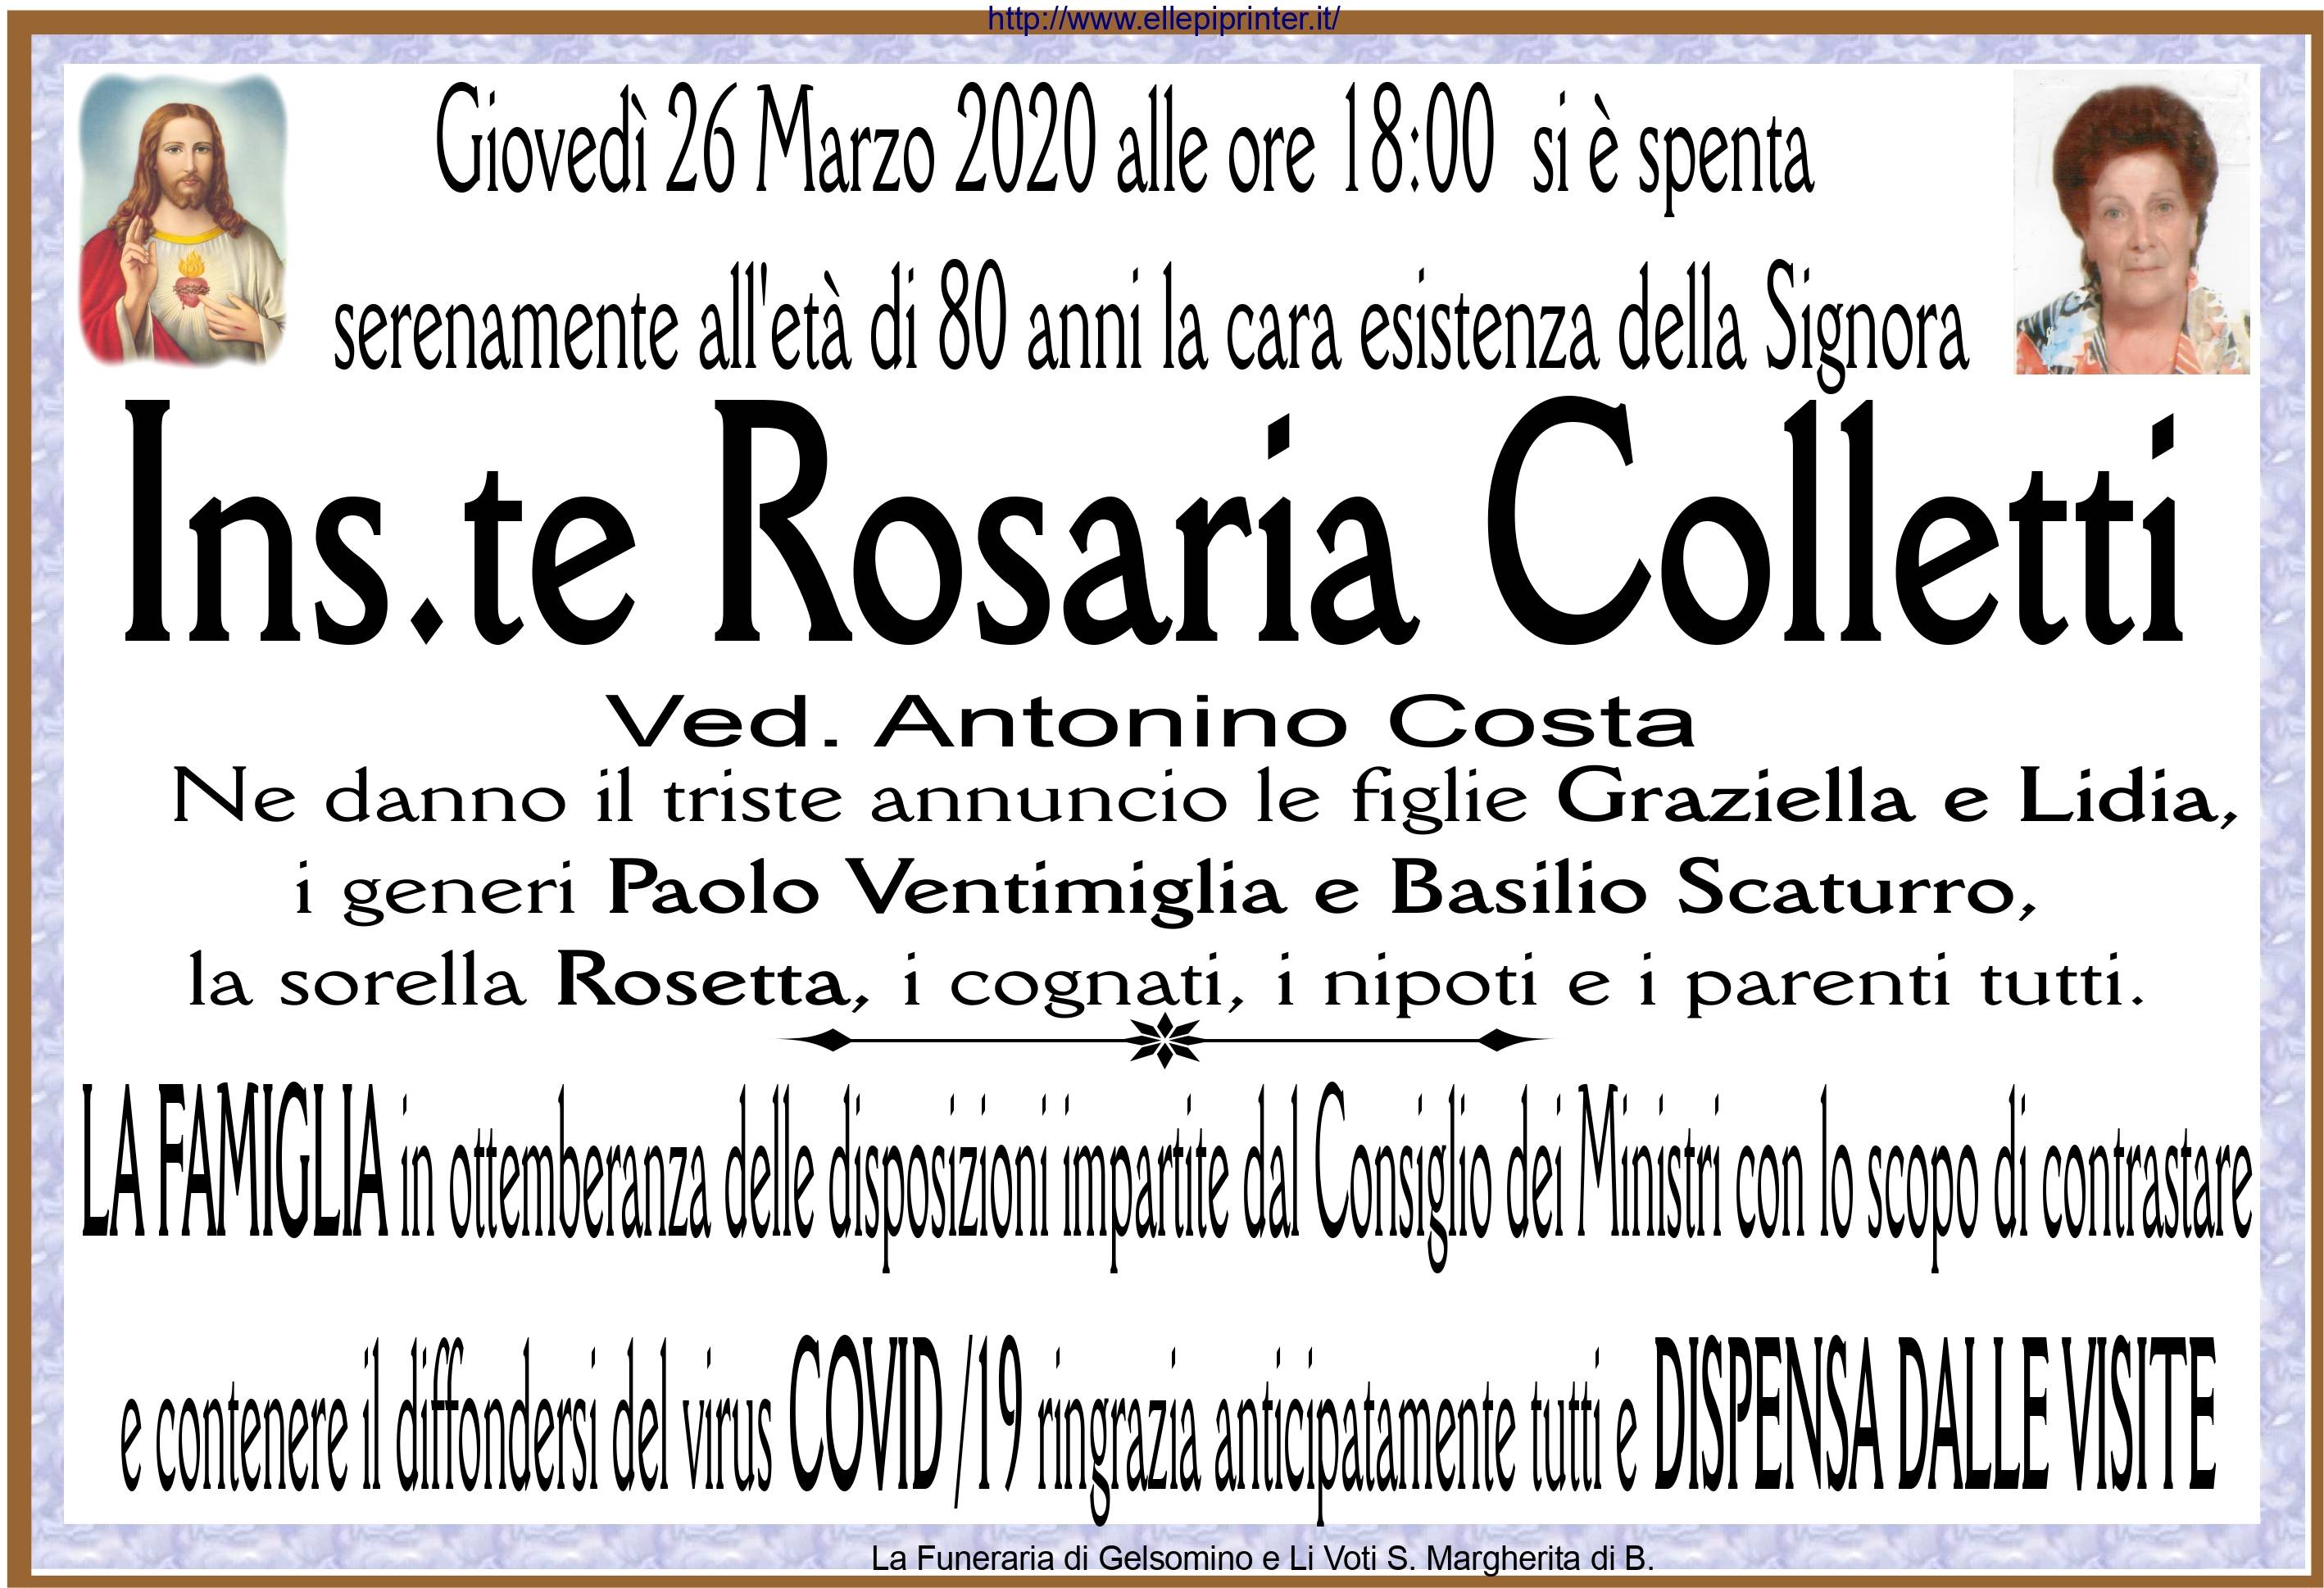 Rosaria Colletti